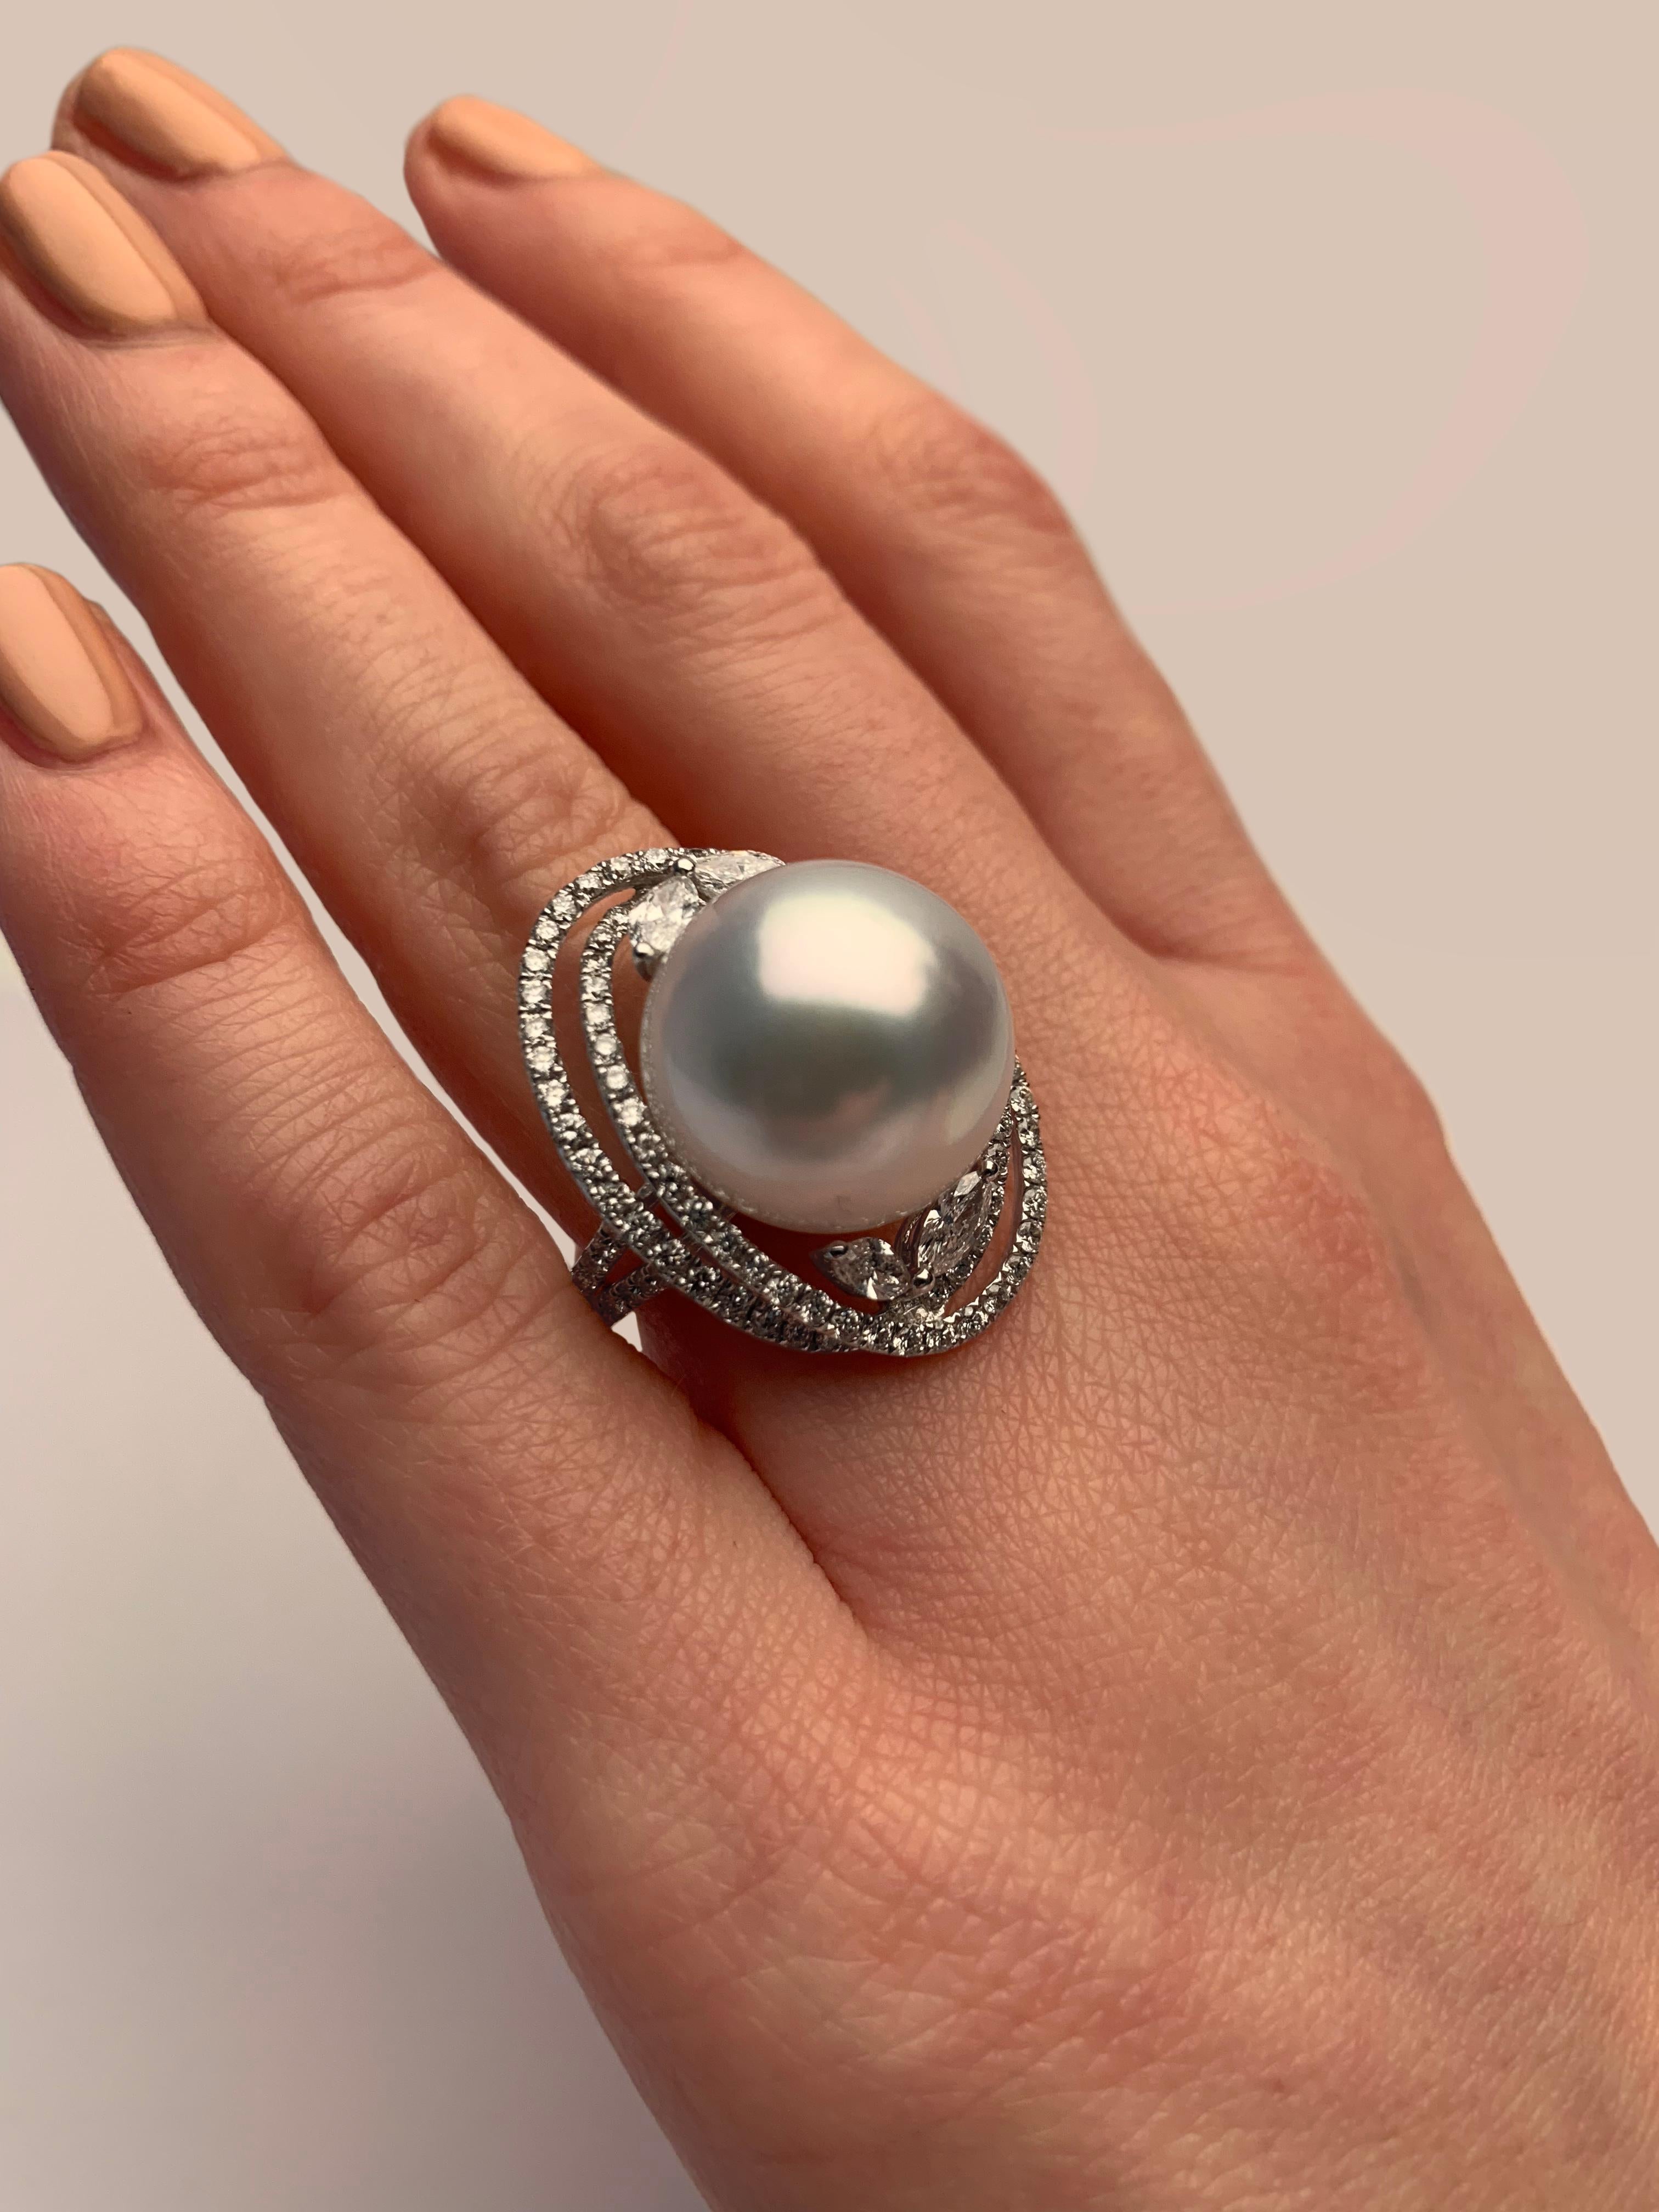 Cette élégante bague de Yoko London Pearls présente une perle supérieure des mers du Sud sertie d'un arrangement ornemental de diamants ronds et de taille marquise. Sertie d'or blanc 18 carats pour enrichir parfaitement l'éclat de la perle et des